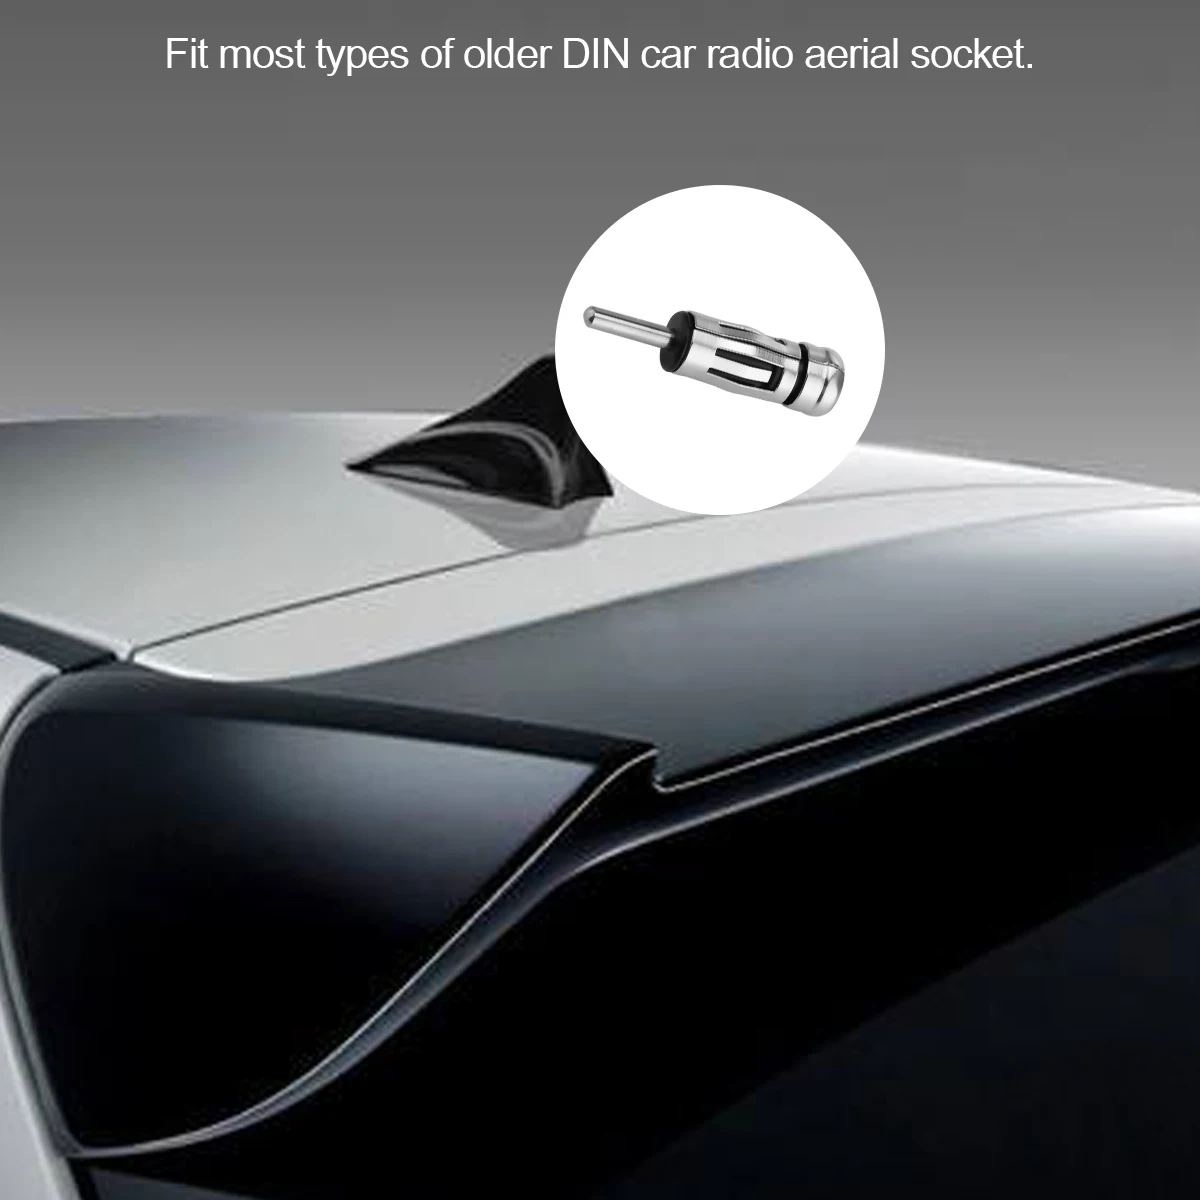 ONEVER автомобилей Радио стерео ISO до DIN Aerial Телевизионные антенны мачты адаптер разъем автомобиля stying Интимные аксессуары для Дин радио